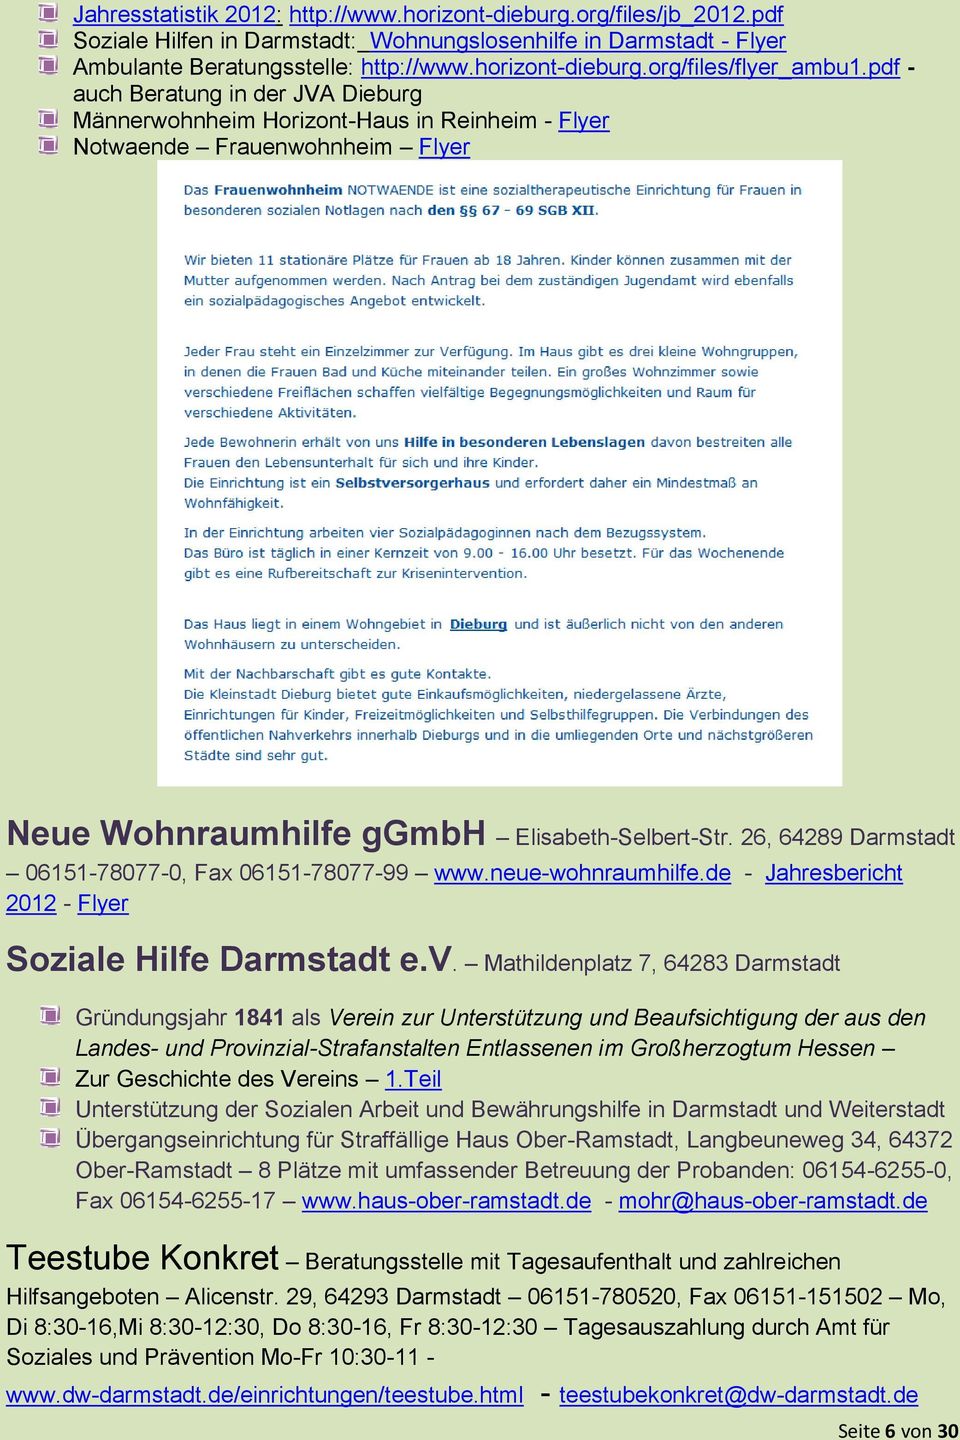 26, 64289 Darmstadt 06151-78077-0, Fax 06151-78077-99 www.neue-wohnraumhilfe.de - Jahresbericht 2012 - Flyer Soziale Hilfe Darmstadt e.v.